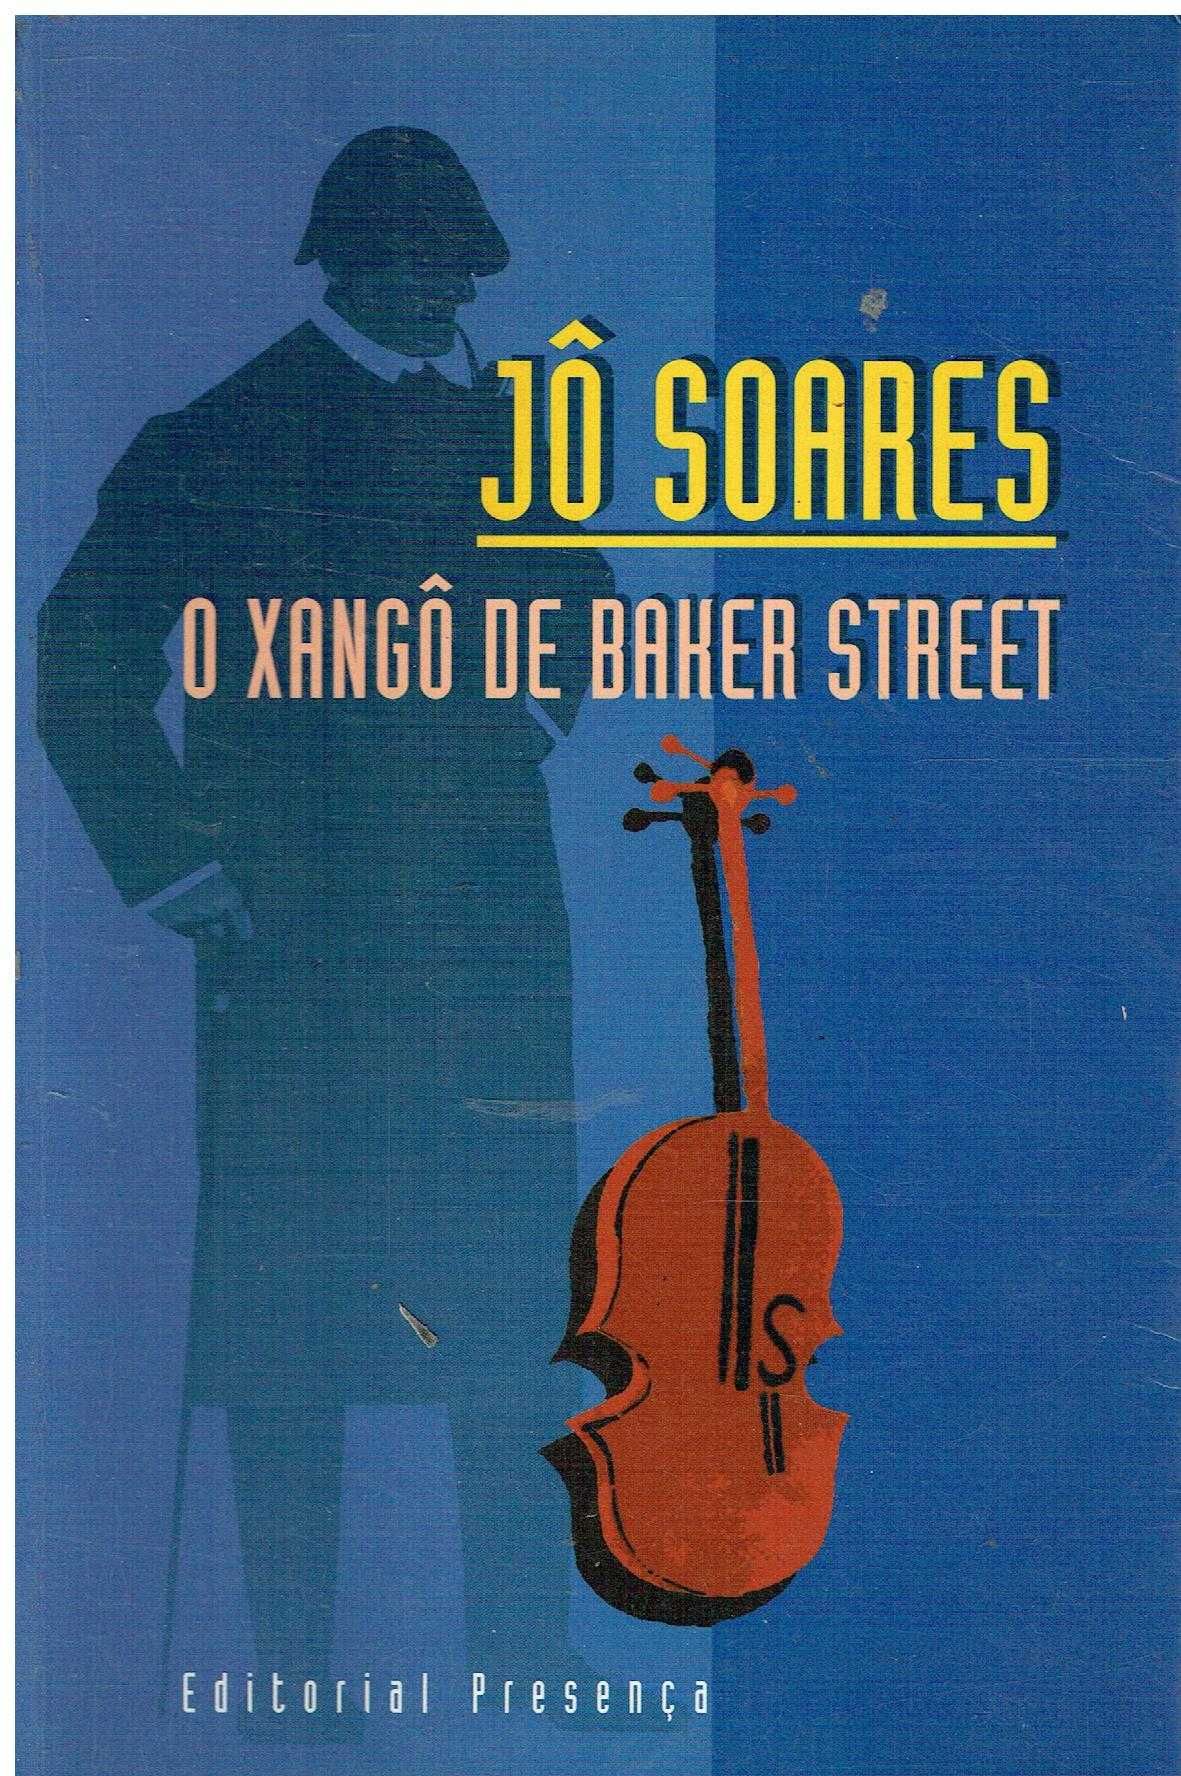 14386

O Xangô de Baker Street
de Jô Soares